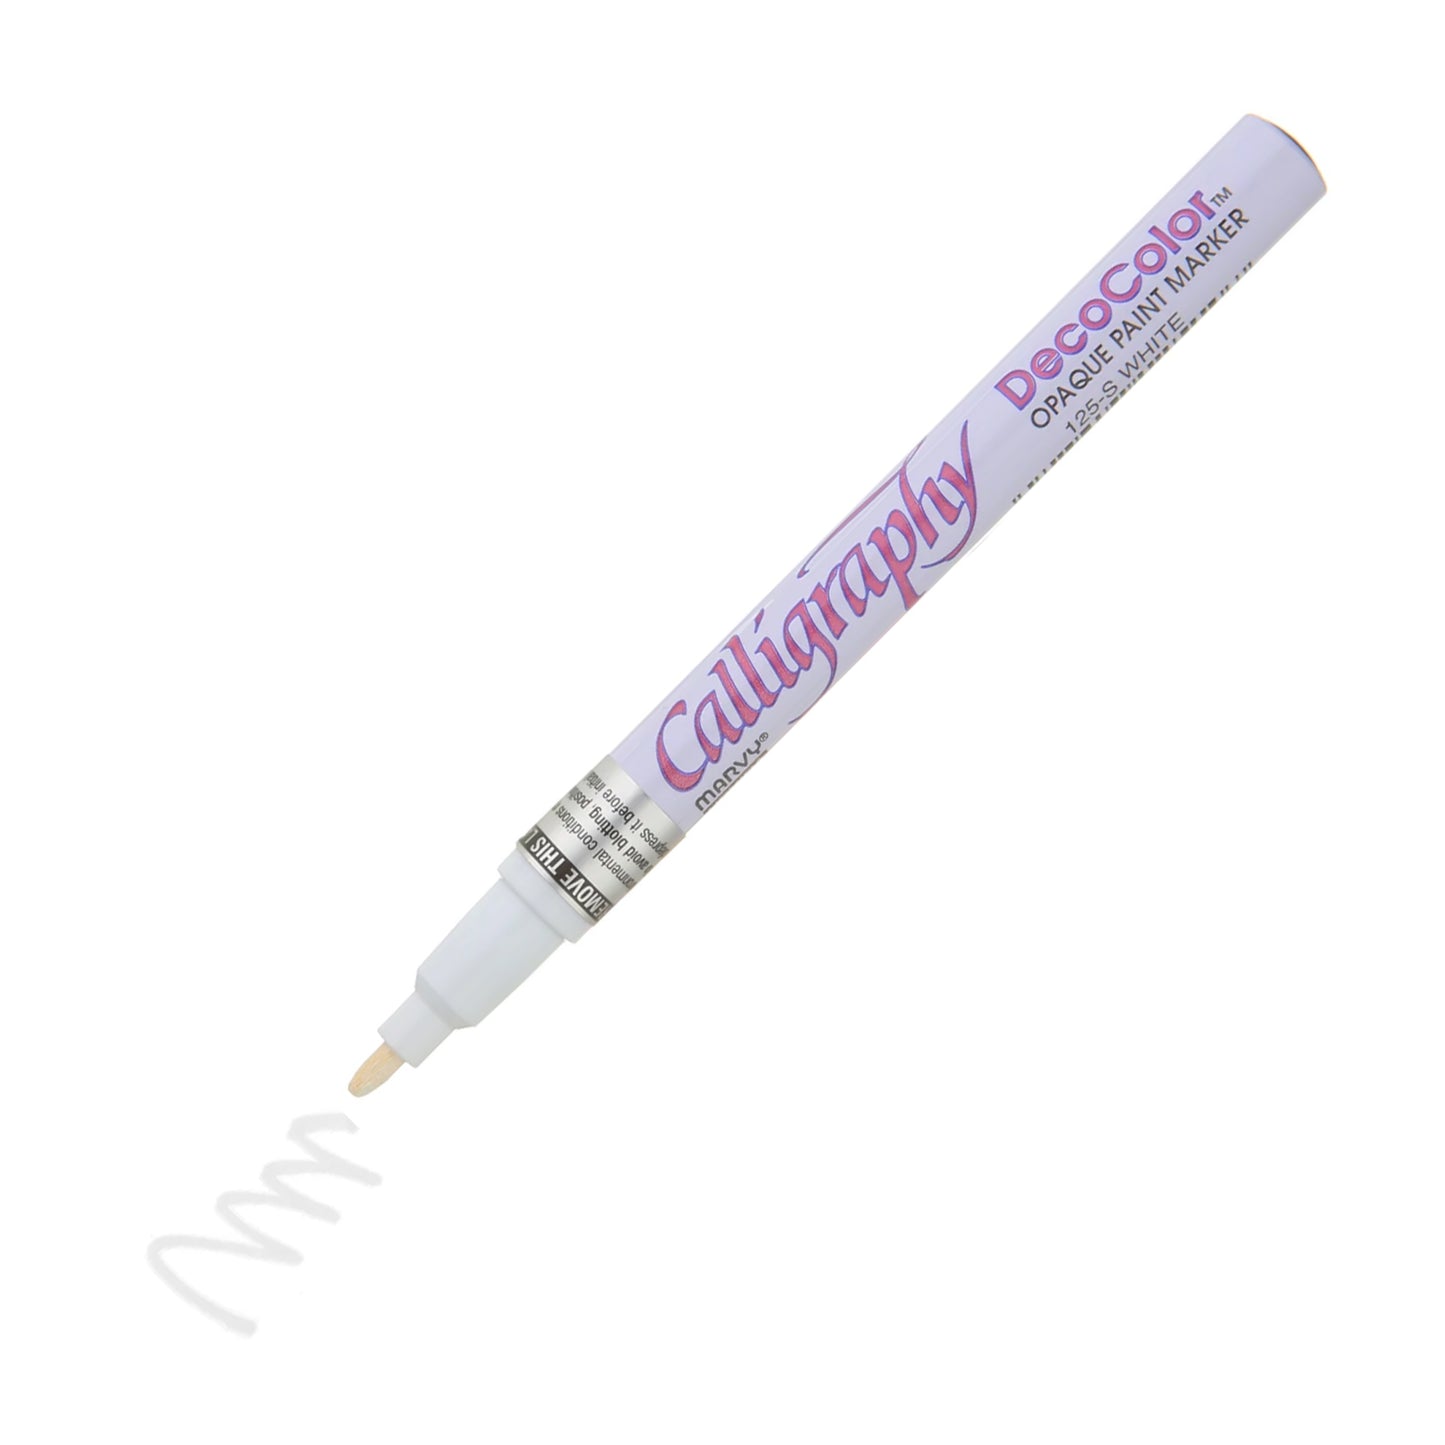 Pennarello a vernice Decocolor, punta per calligrafia da 2 mm